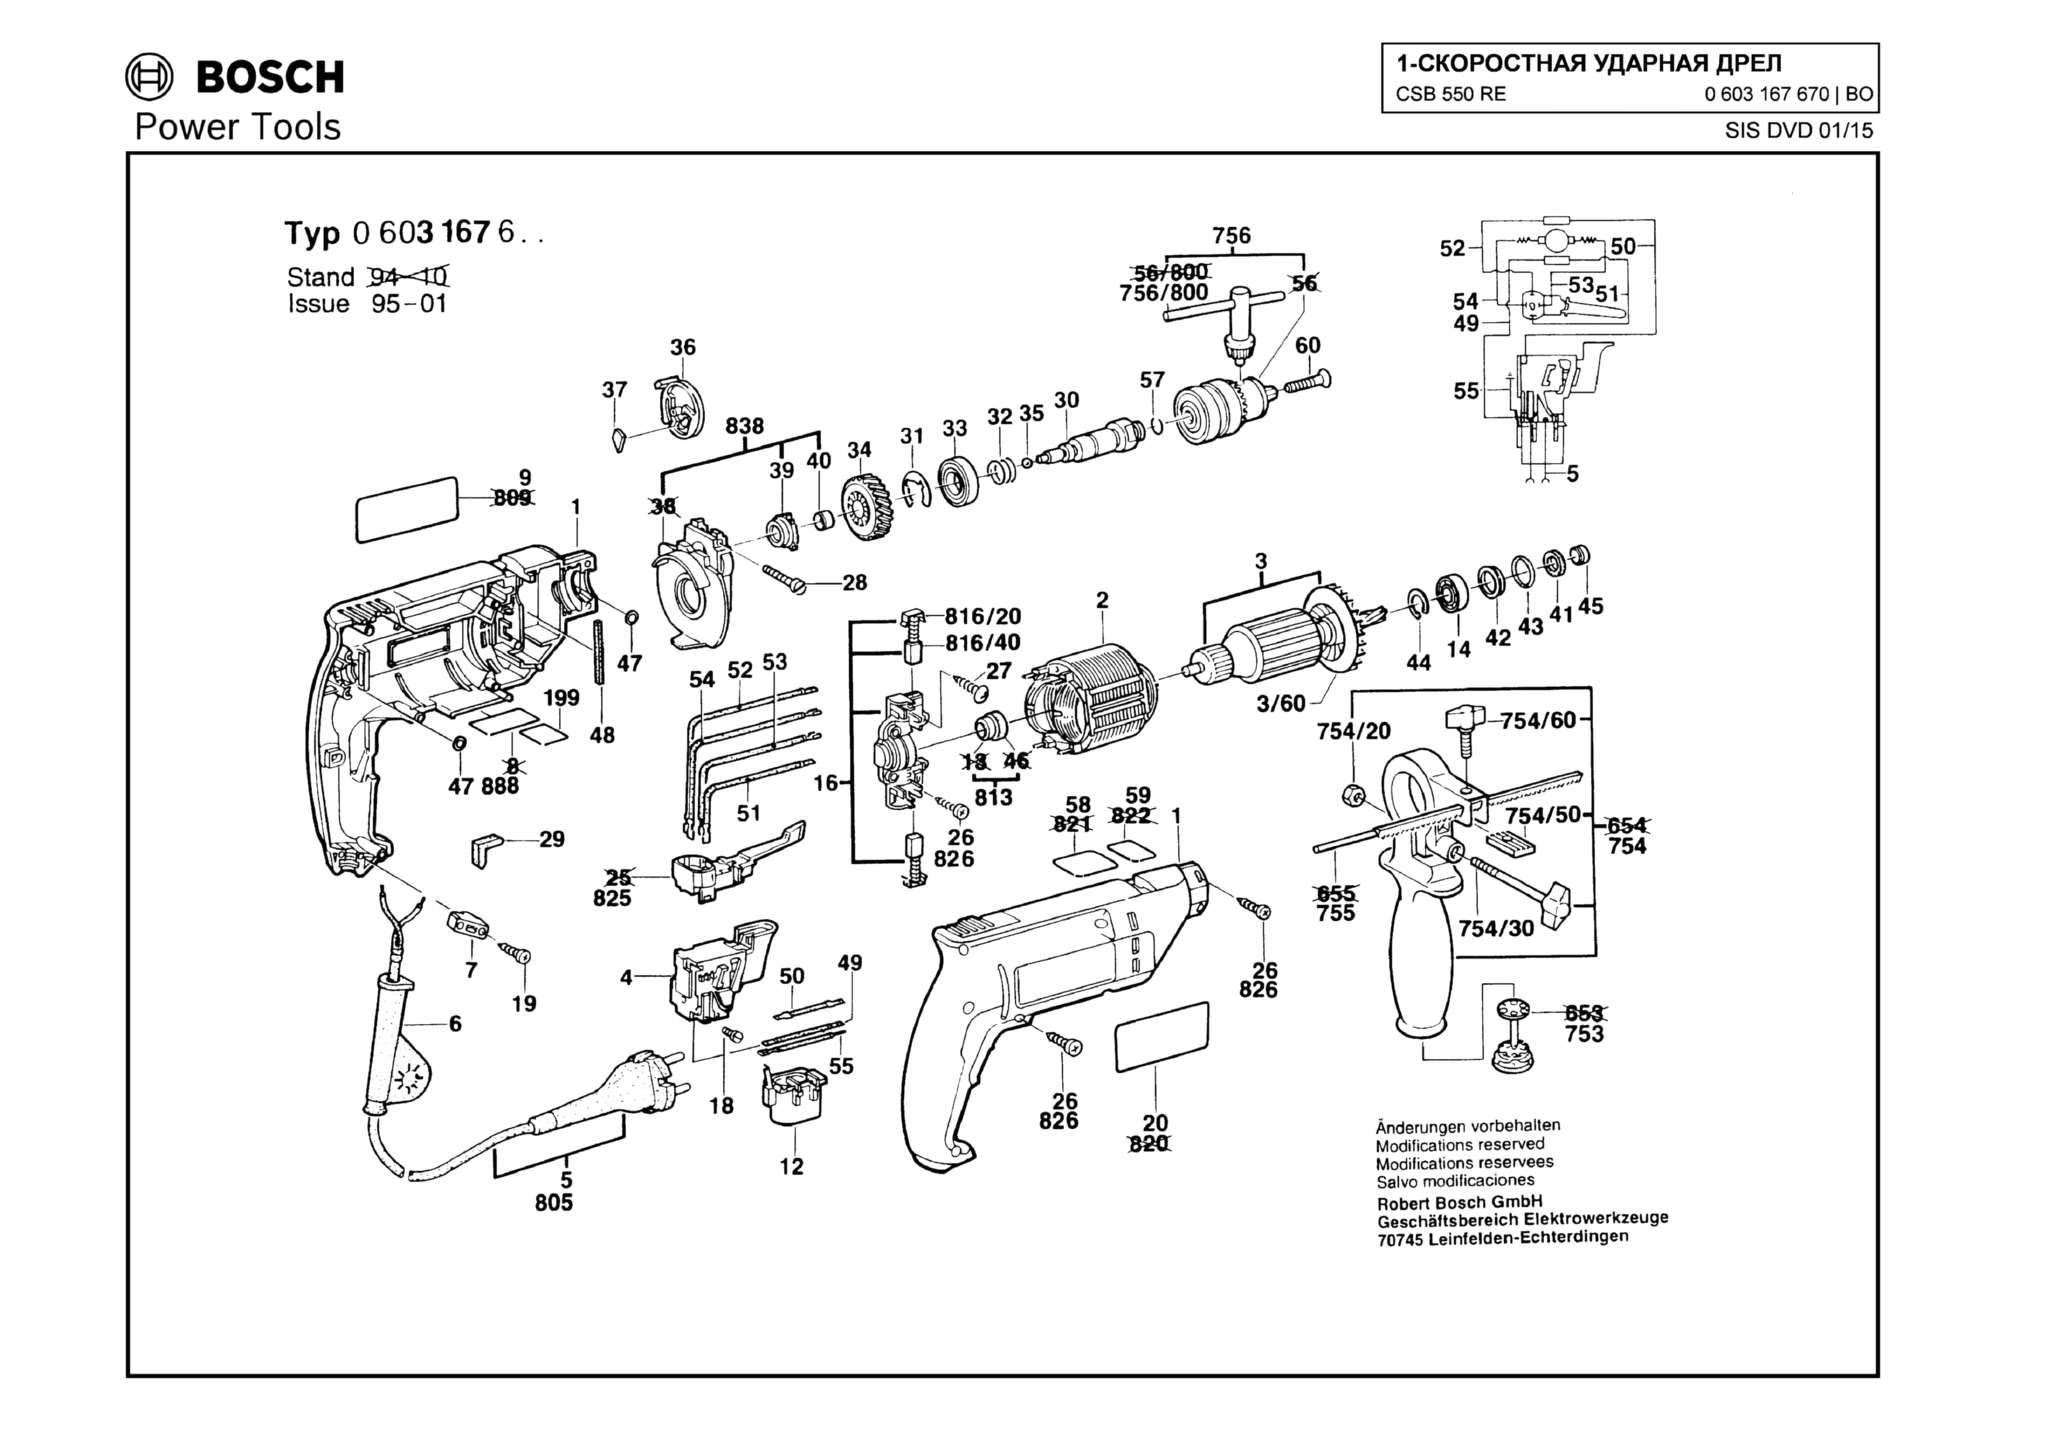 Запчасти, схема и деталировка Bosch CSB 550 RE (ТИП 0603167670)